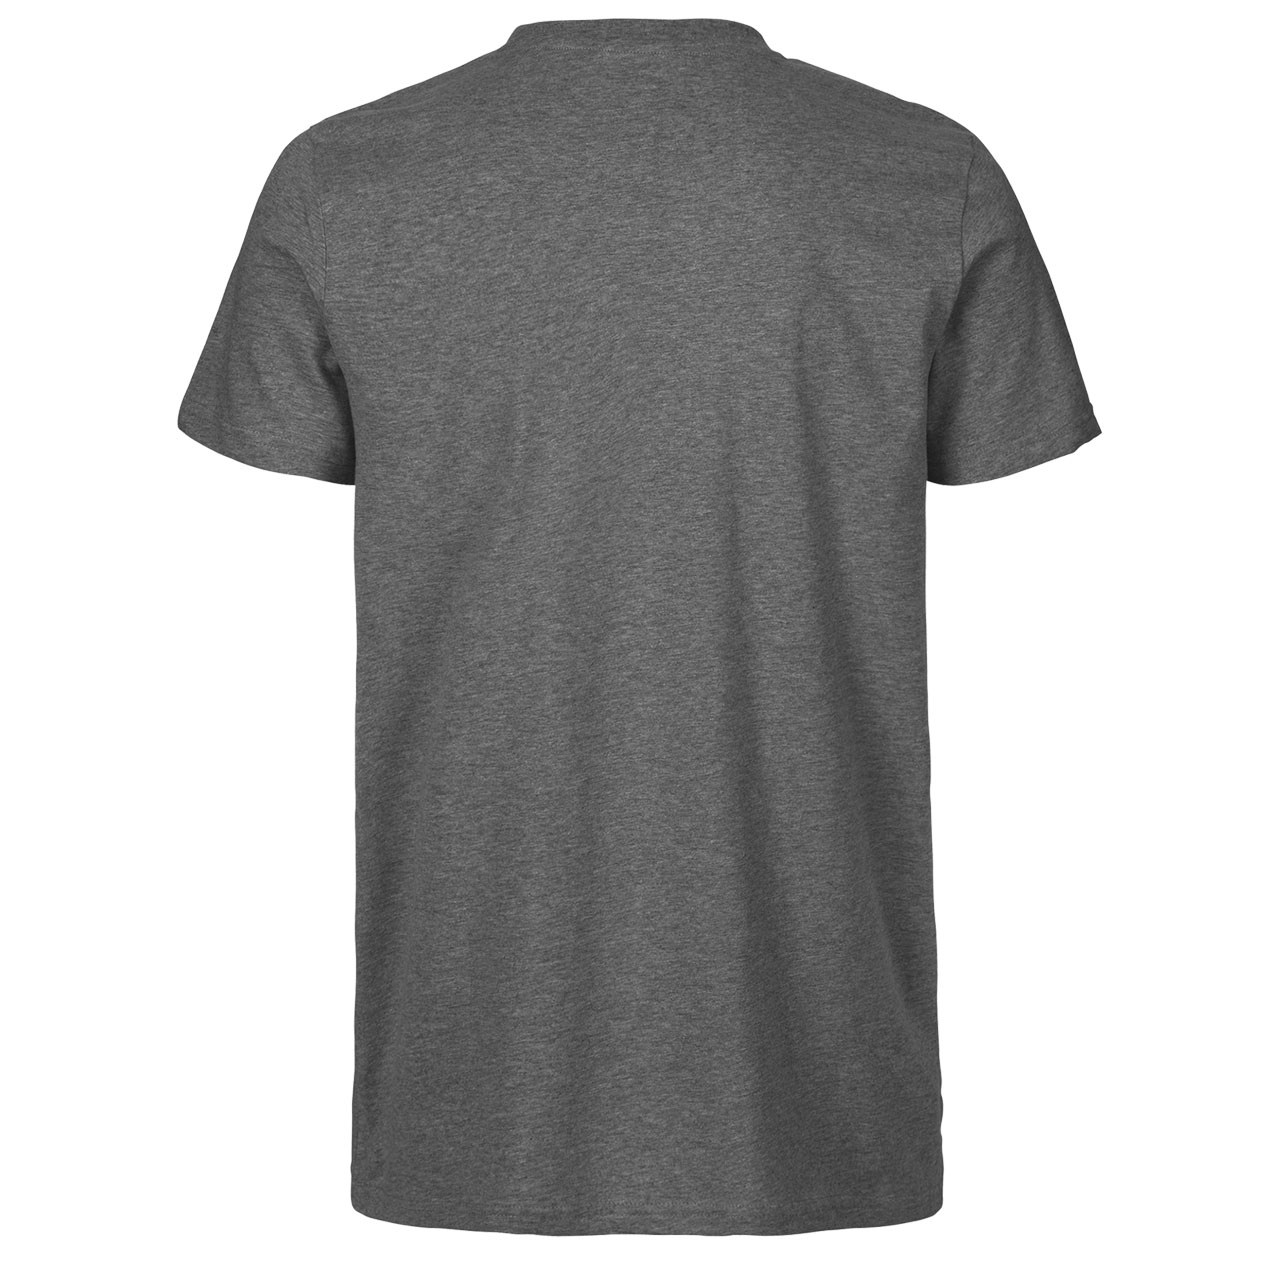 Neutral® Mens Fit T-Shirt - Bio-Baumwolle Dark Heather L Dark Heather